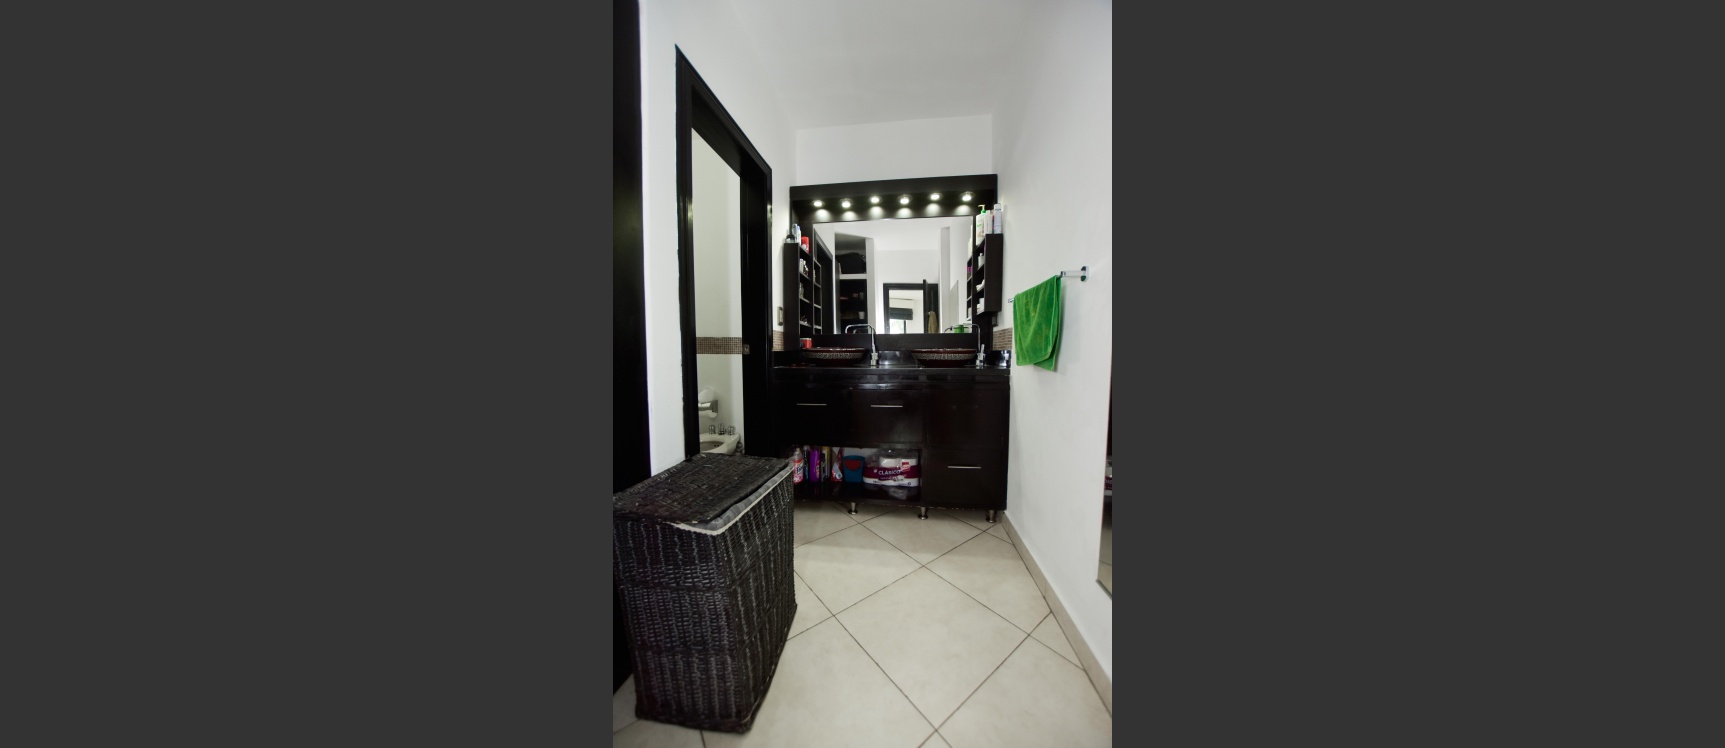 GeoBienes - Casa en venta en Vía Samborondón km 2.5 - Urb. Bouganville - Plusvalia Guayaquil Casas de venta y alquiler Inmobiliaria Ecuador